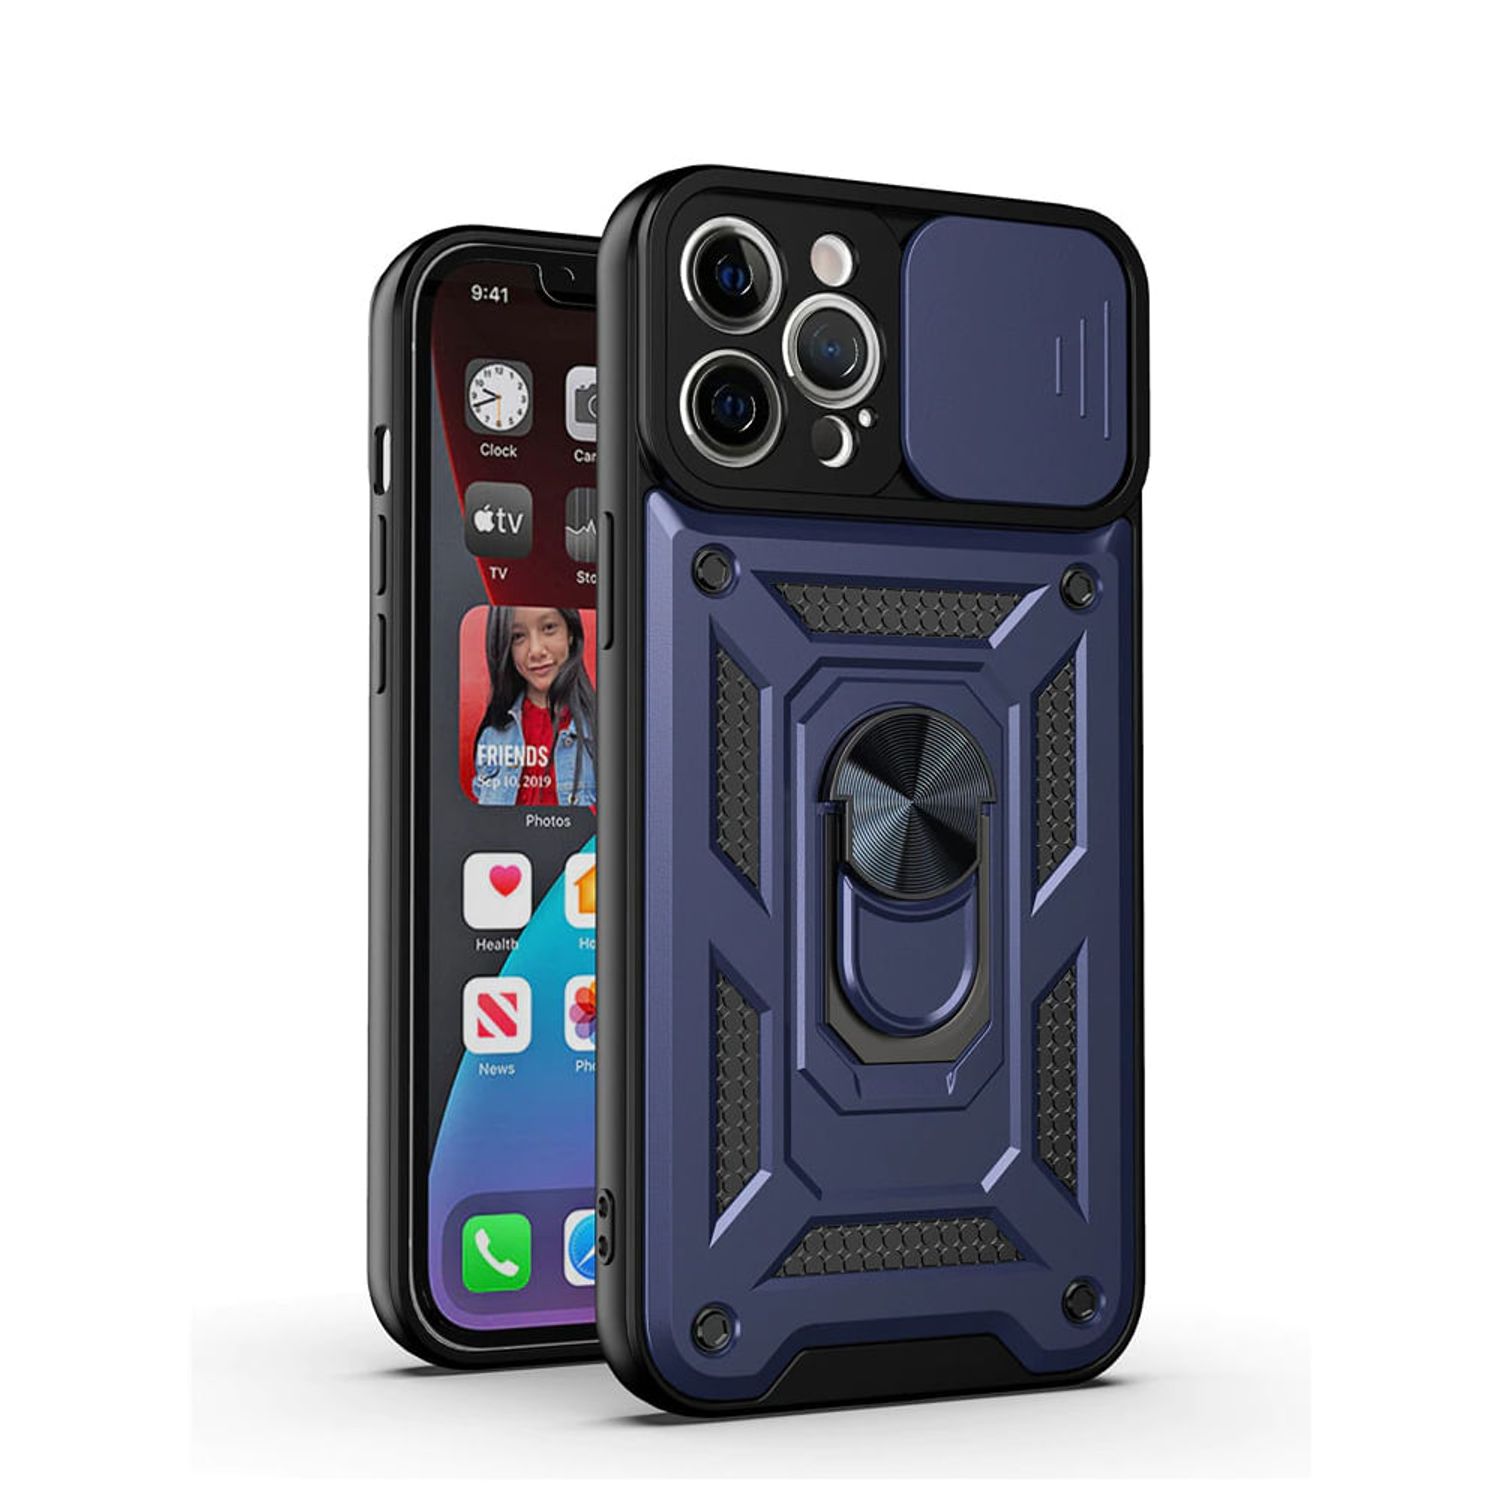 Funda rígida iPhone 12 Pro Max con protector de cámara metal (azul) - Funda -movil.es